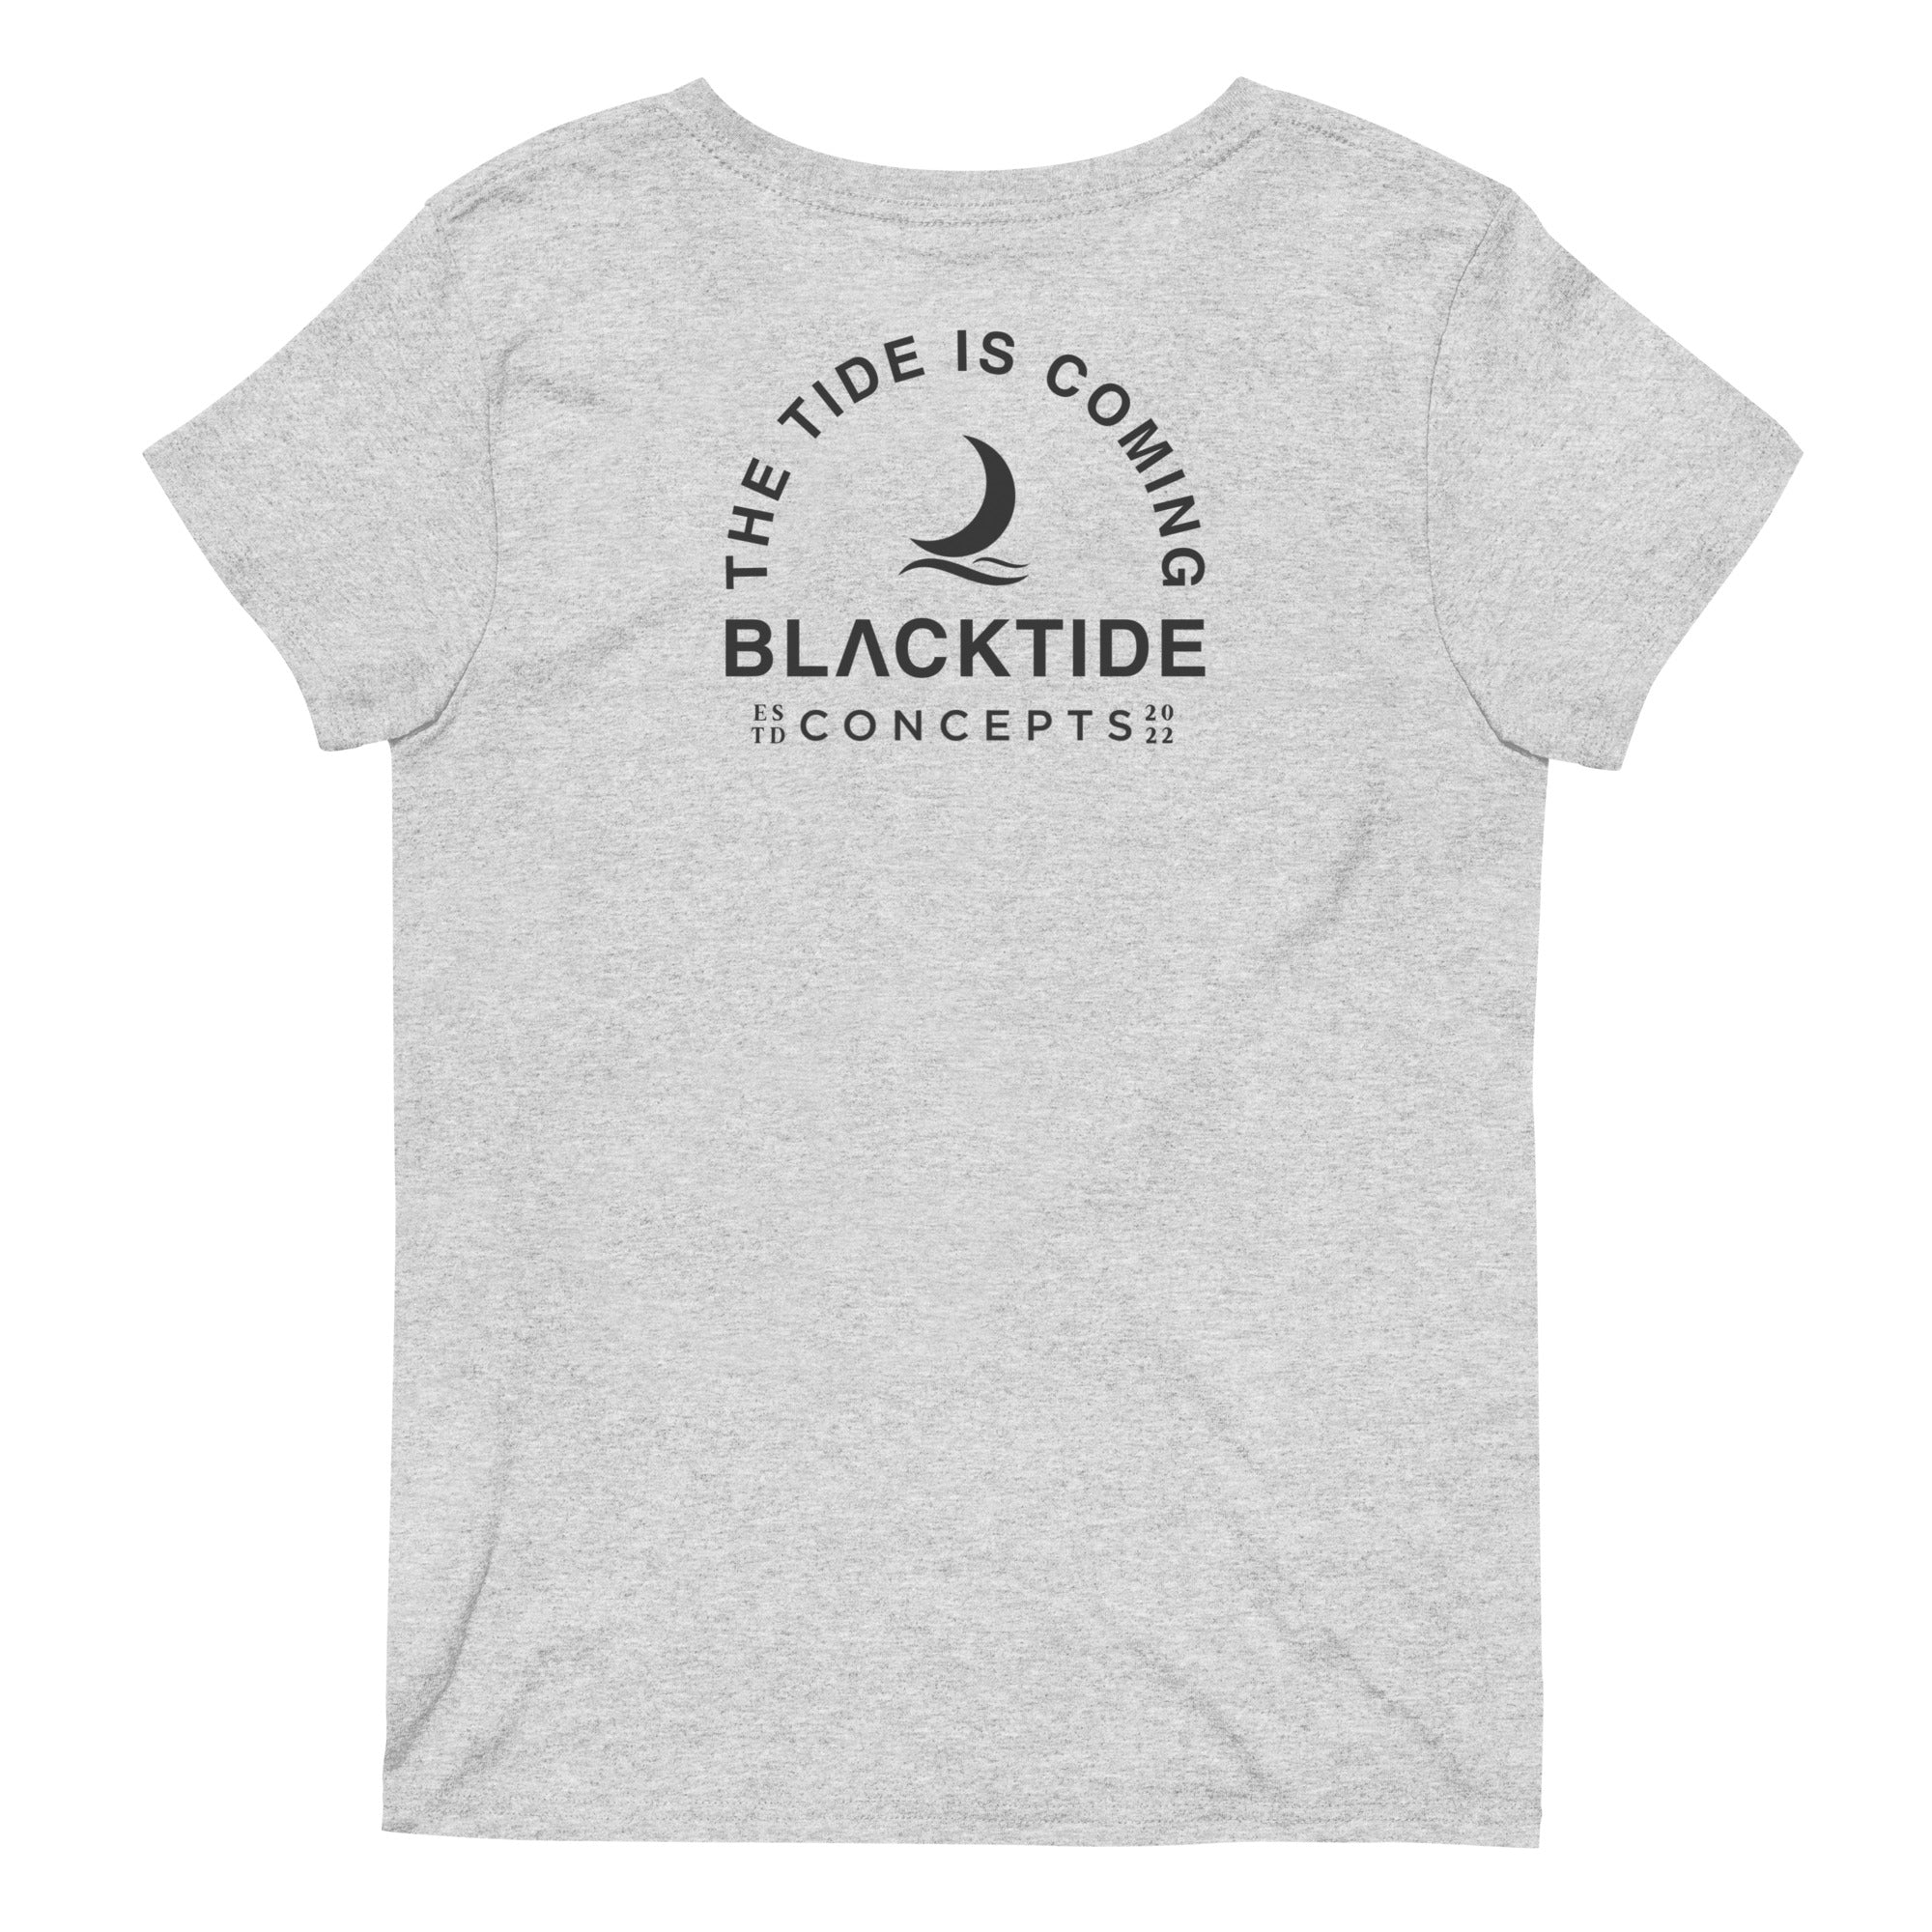 Blacktide Concepts Women's V-Neck